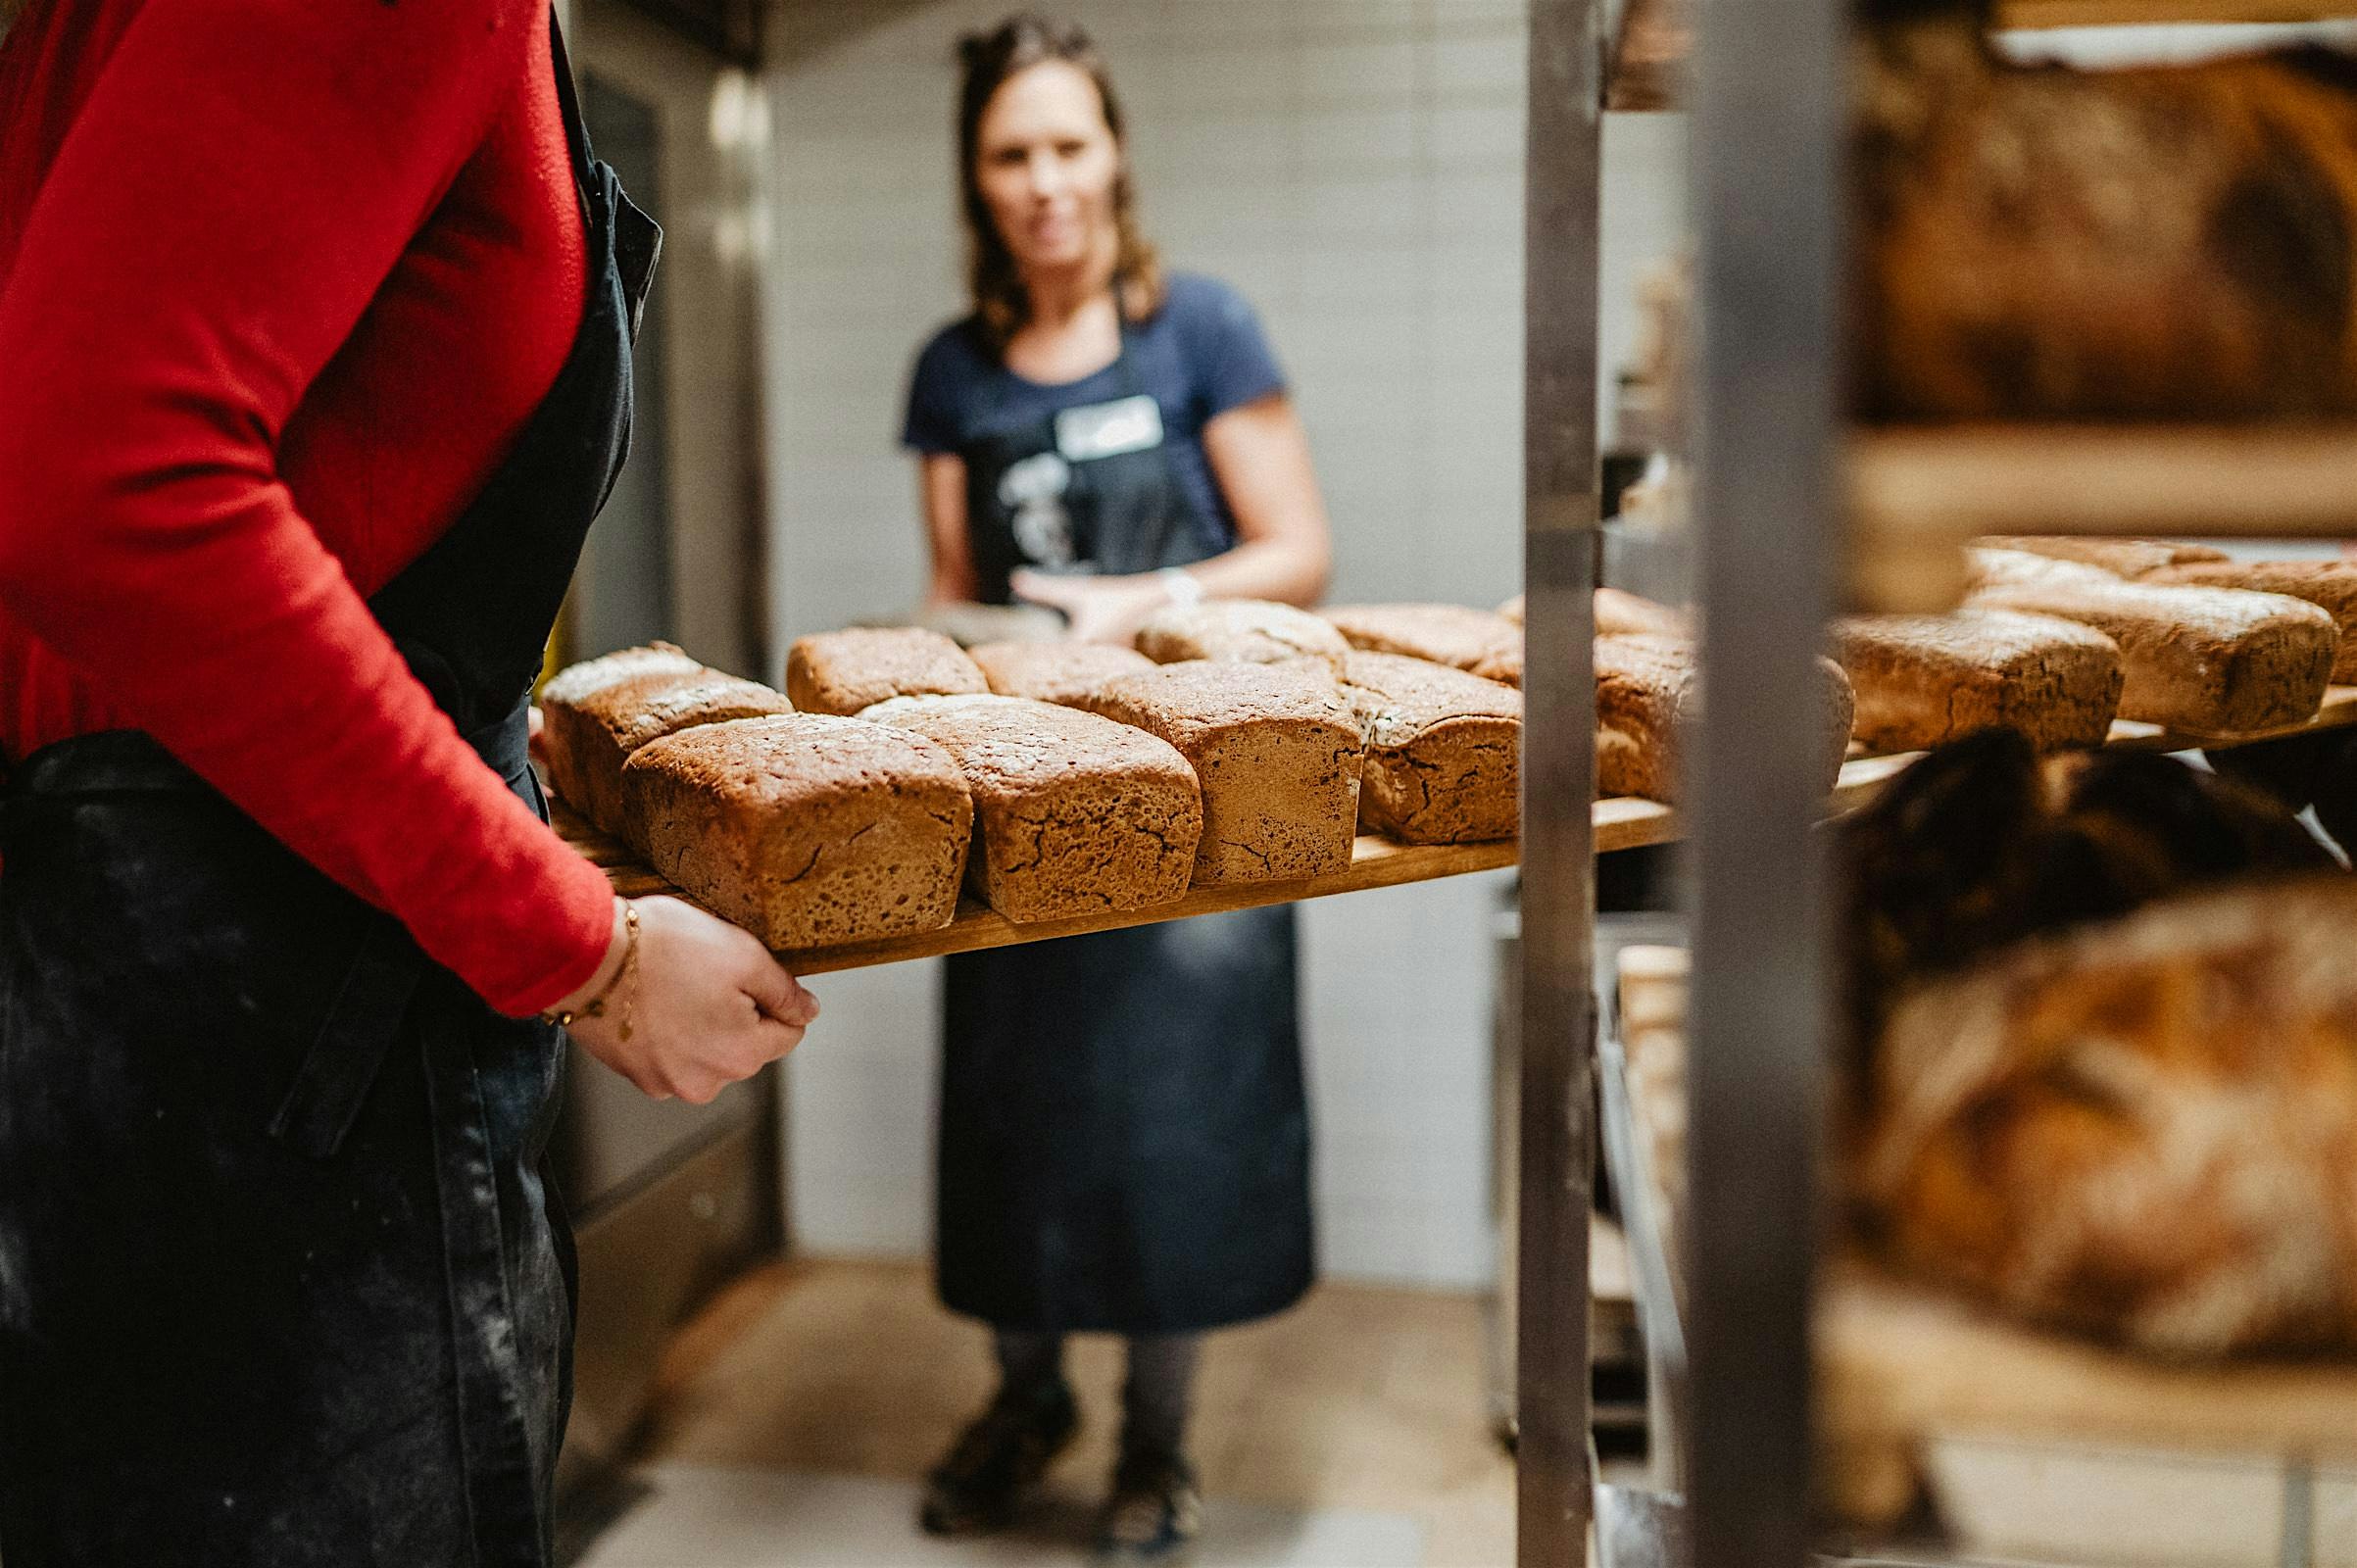 Entdecke die Geheimnisse des Brotbackens beim #echtenBäcker. Genieße zu Hause mit Freunden und Familie deine eigenen 10 gebackenen Brote.